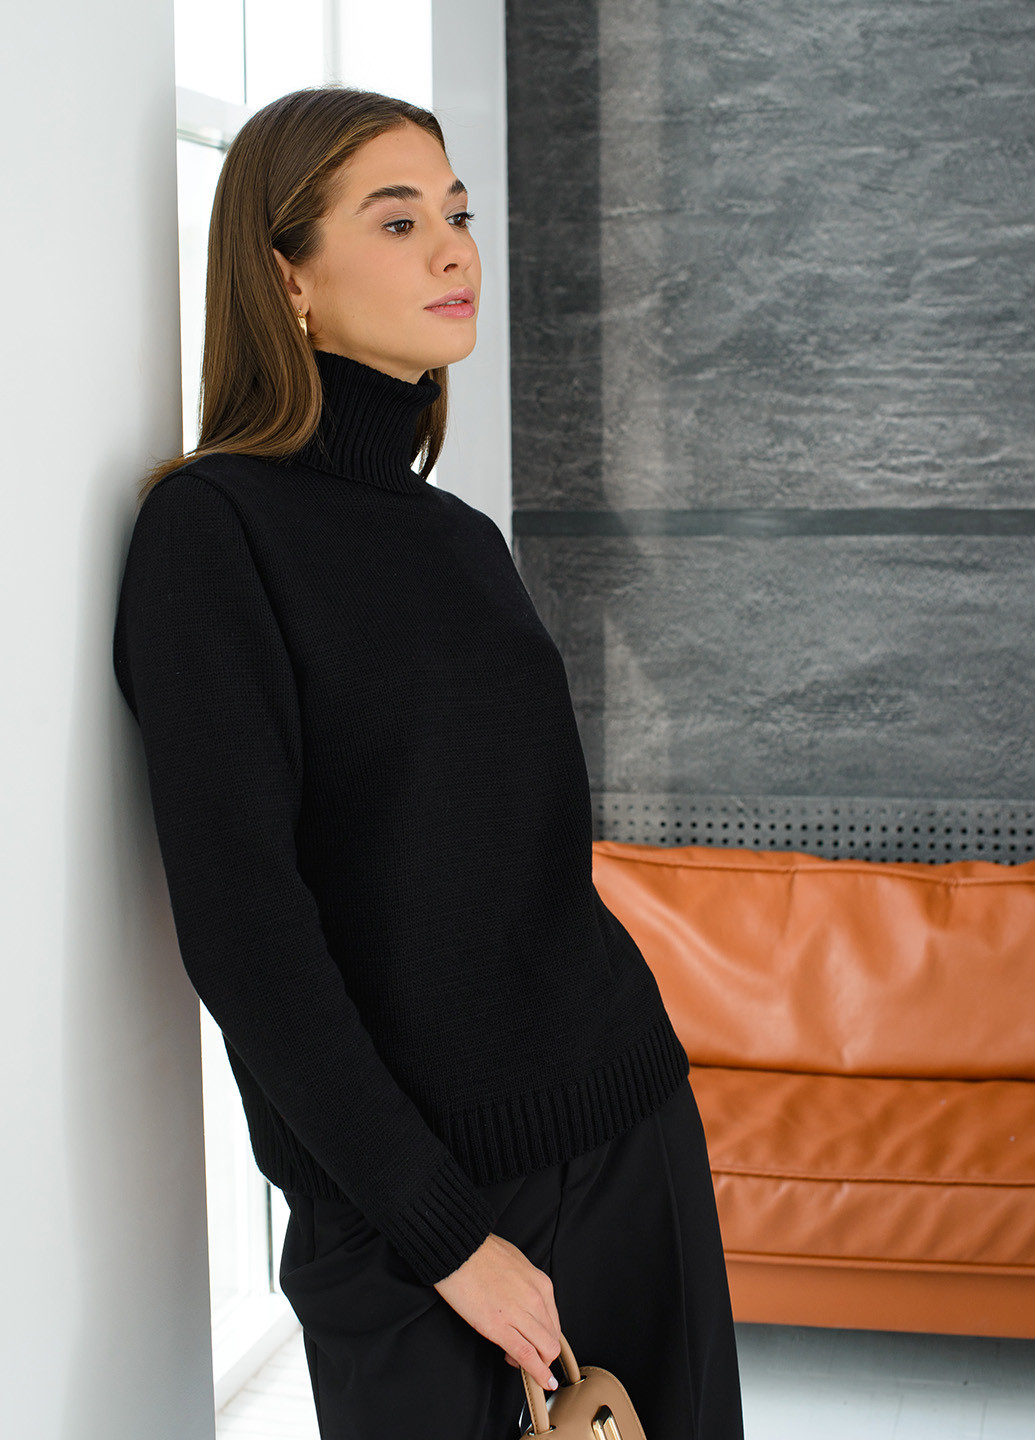 Черный зимний классический женский свитер SVTR